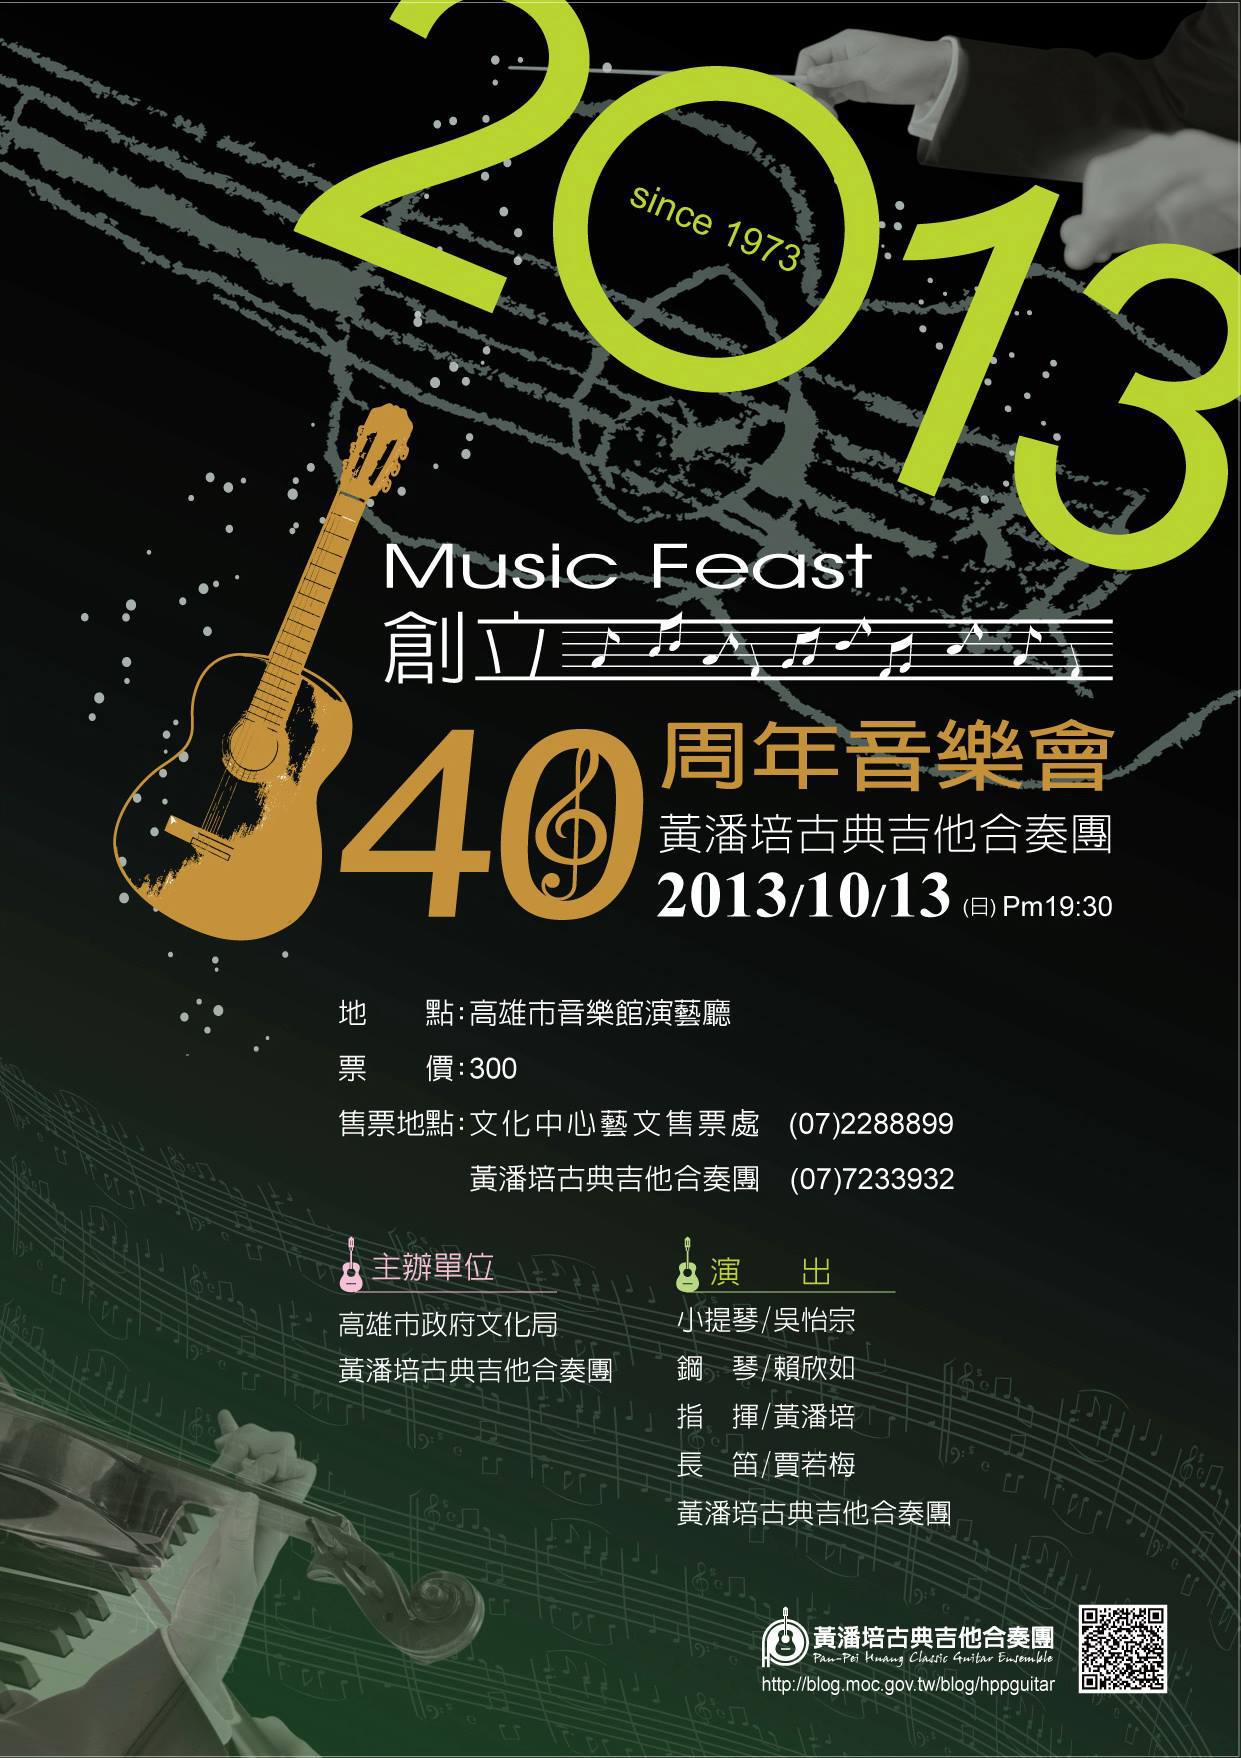 黃潘培古典吉他合奏團創立40周年音樂會